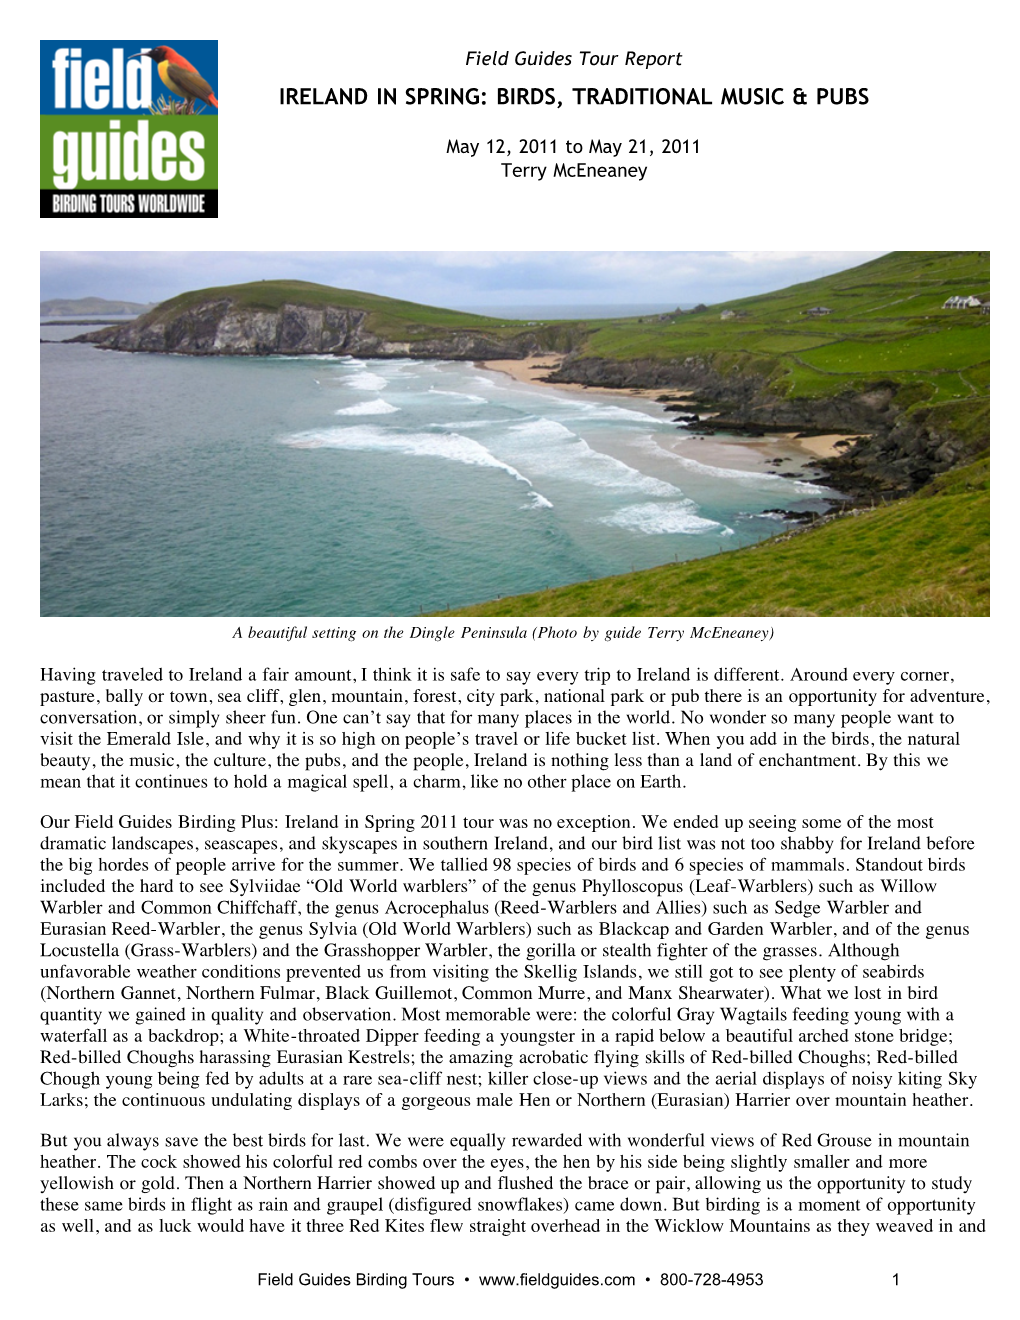 Field Guides Birding Tours: Ireland in Spring: Birds